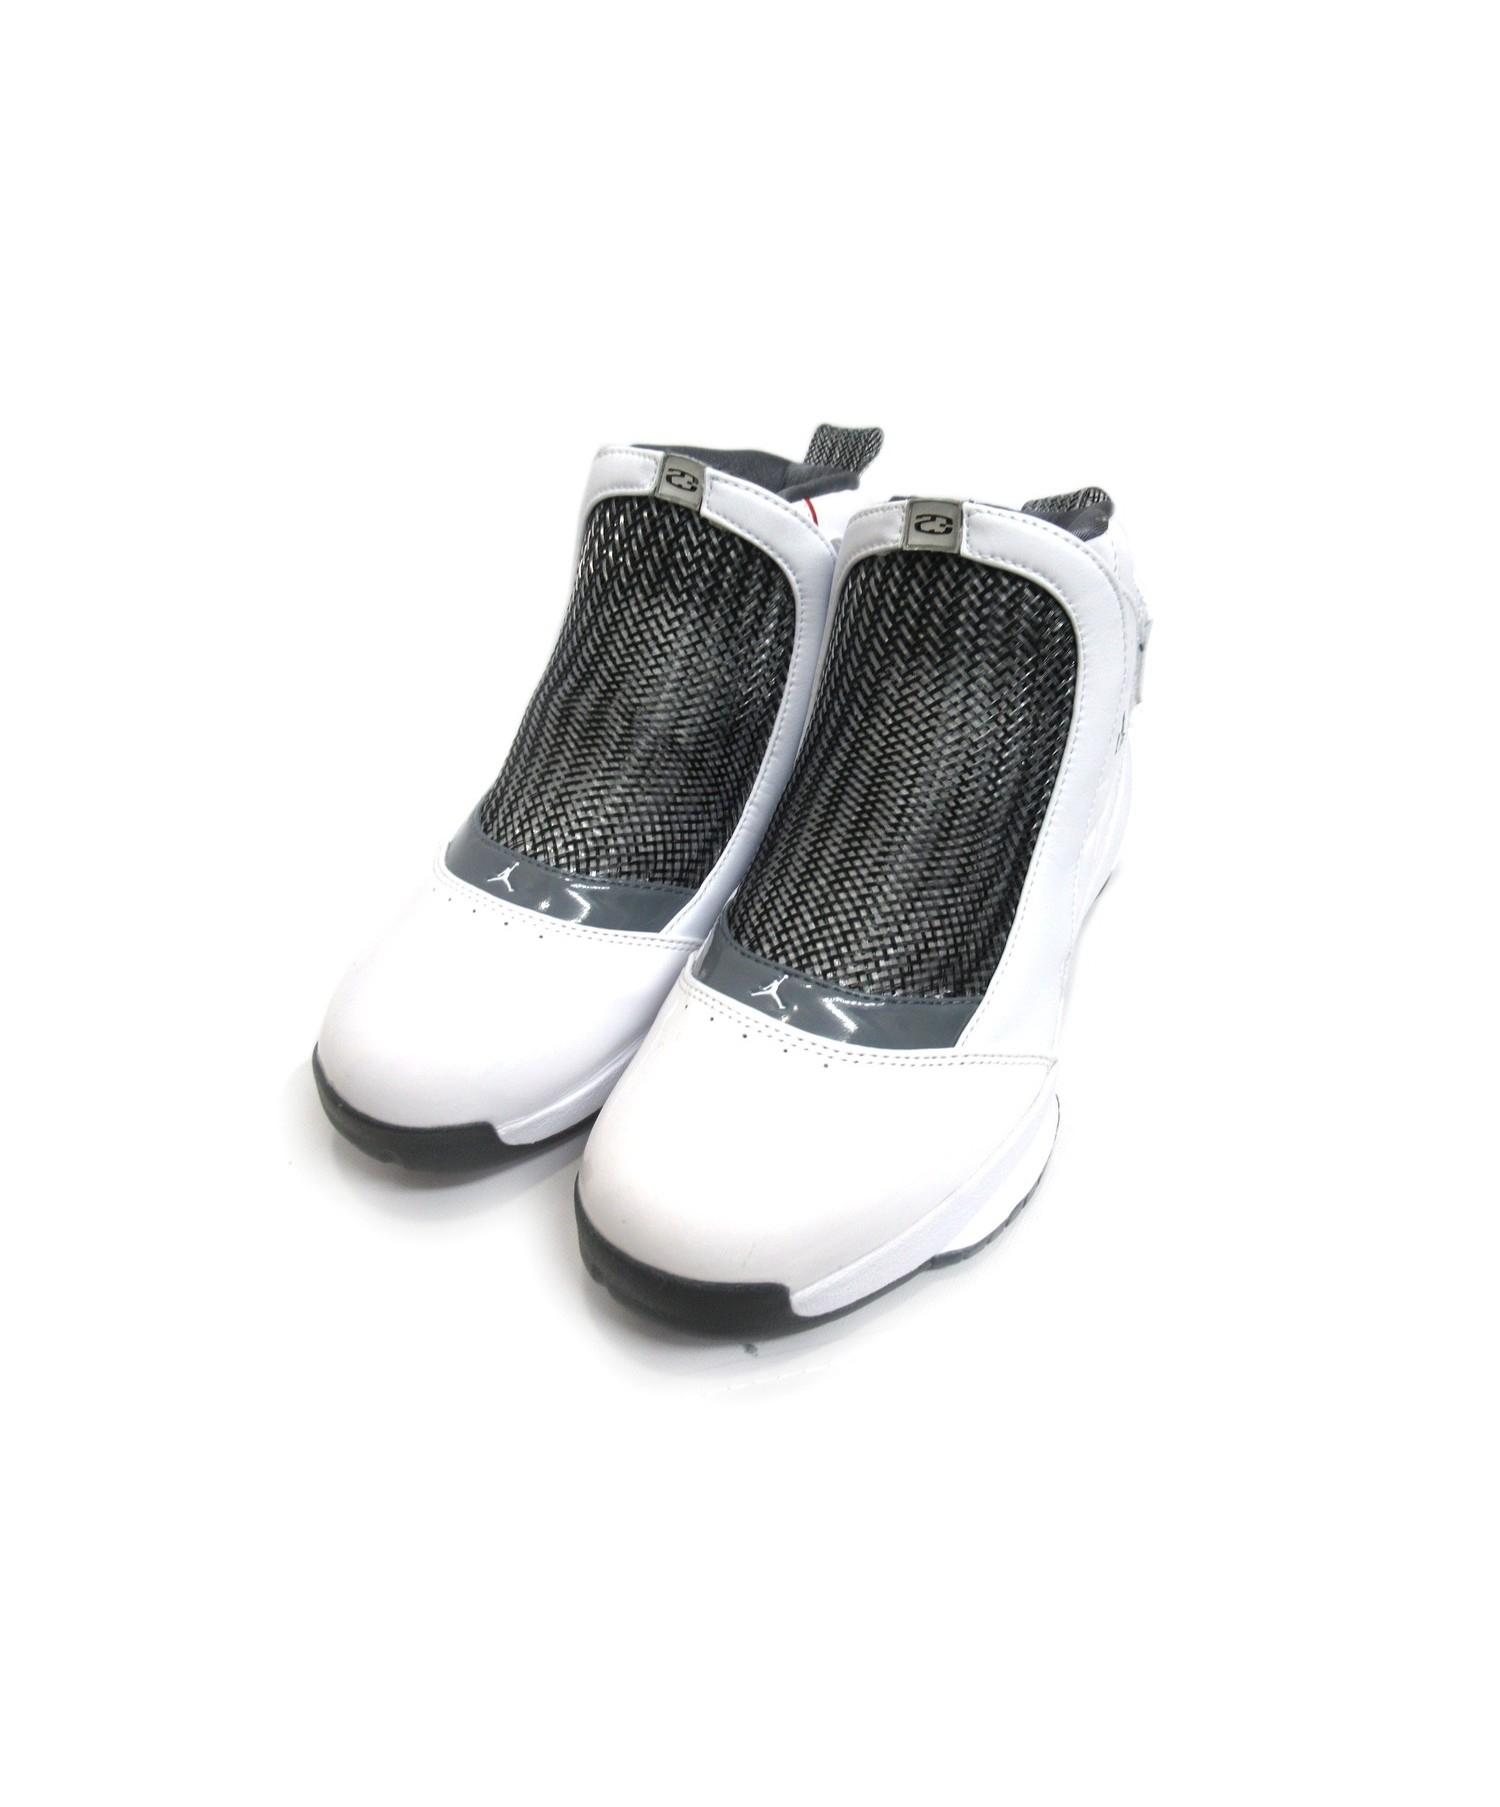 中古 古着通販 Nike Air Jordan ナイキ エアジョーダン Air Jordan 19 サイズ 26 Flint Grey And White And Chrome ブランド 古着通販 トレファク公式 Trefac Fashion